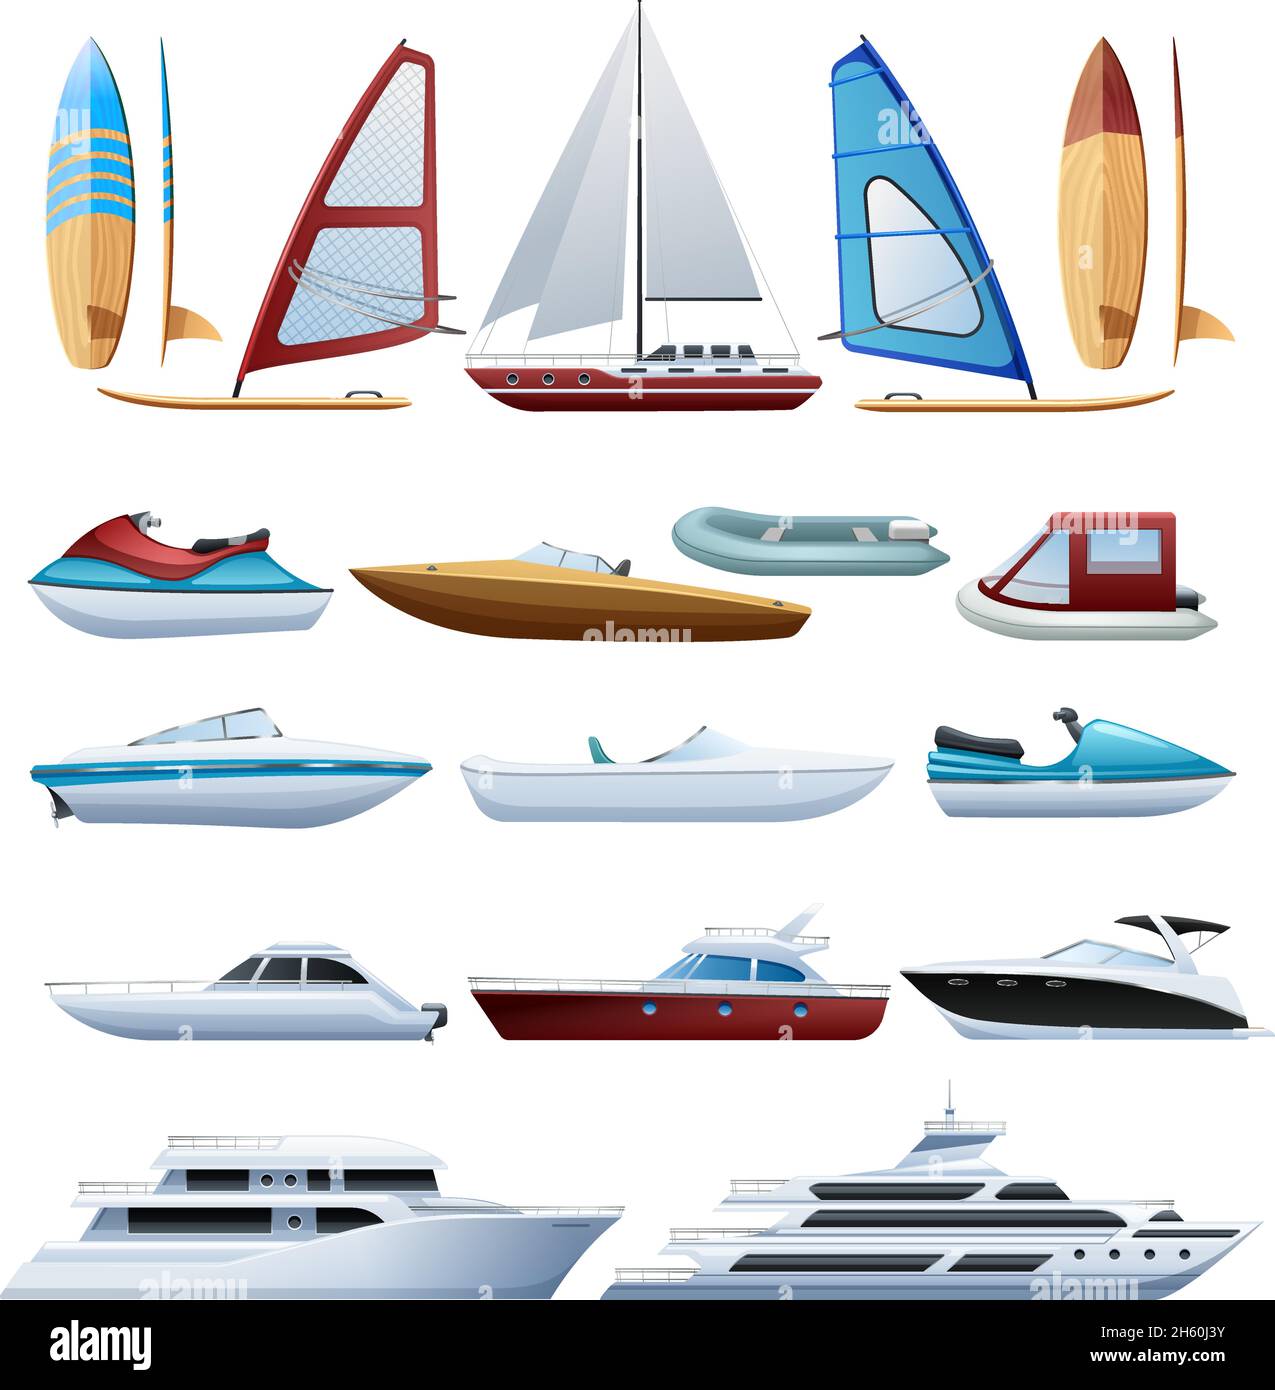 Motorboote Katamaran Windsurfer und Segelboot verschiedene Arten von Wasser Flache Transportsymbole setzen abstrakte isolierte Vektordarstellung Stock Vektor